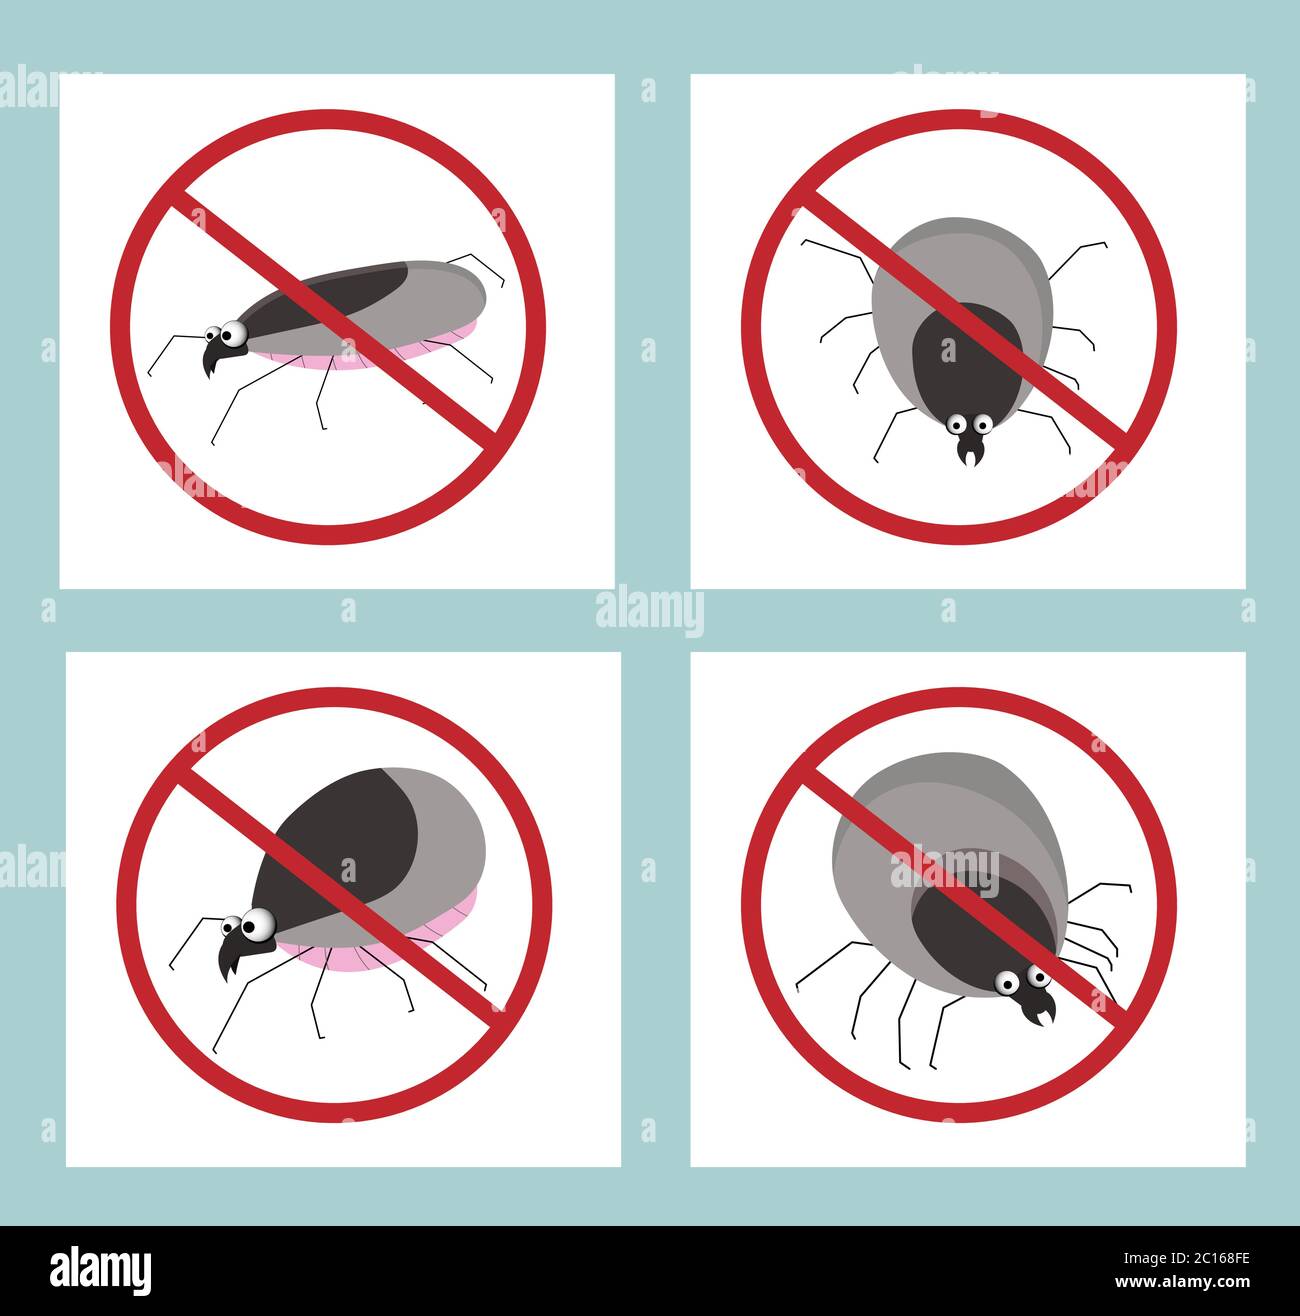 Parásito de garrapatas. Insecto chupando sangre. PARADA MIT. Signo contra insectos. Insecticida. Ilustración del Vector